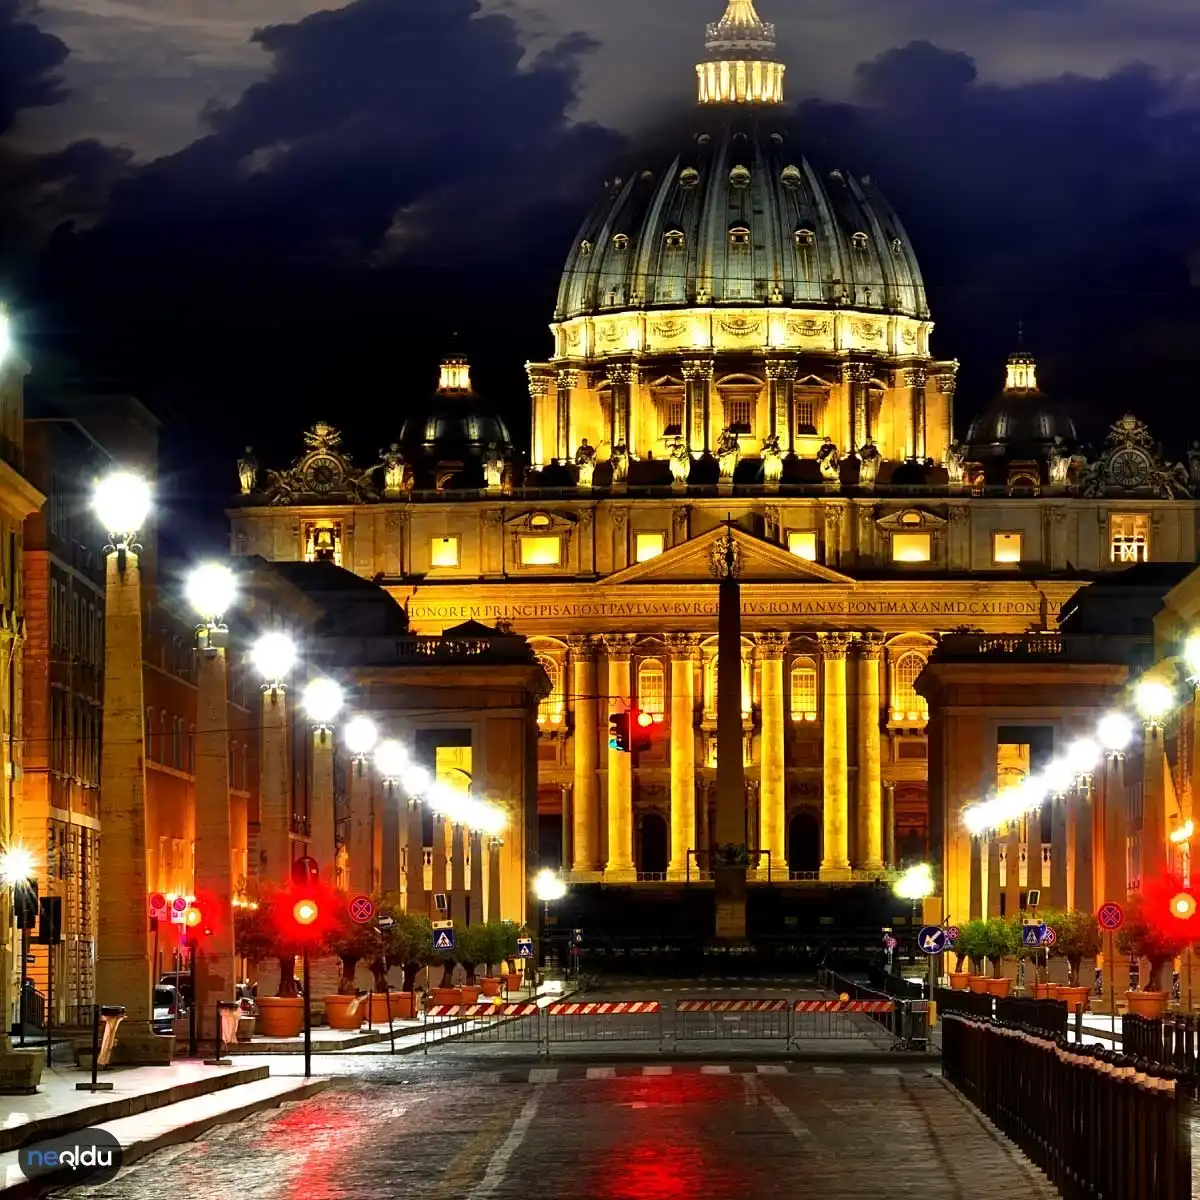 Vatikan Hakkında Bilgiler